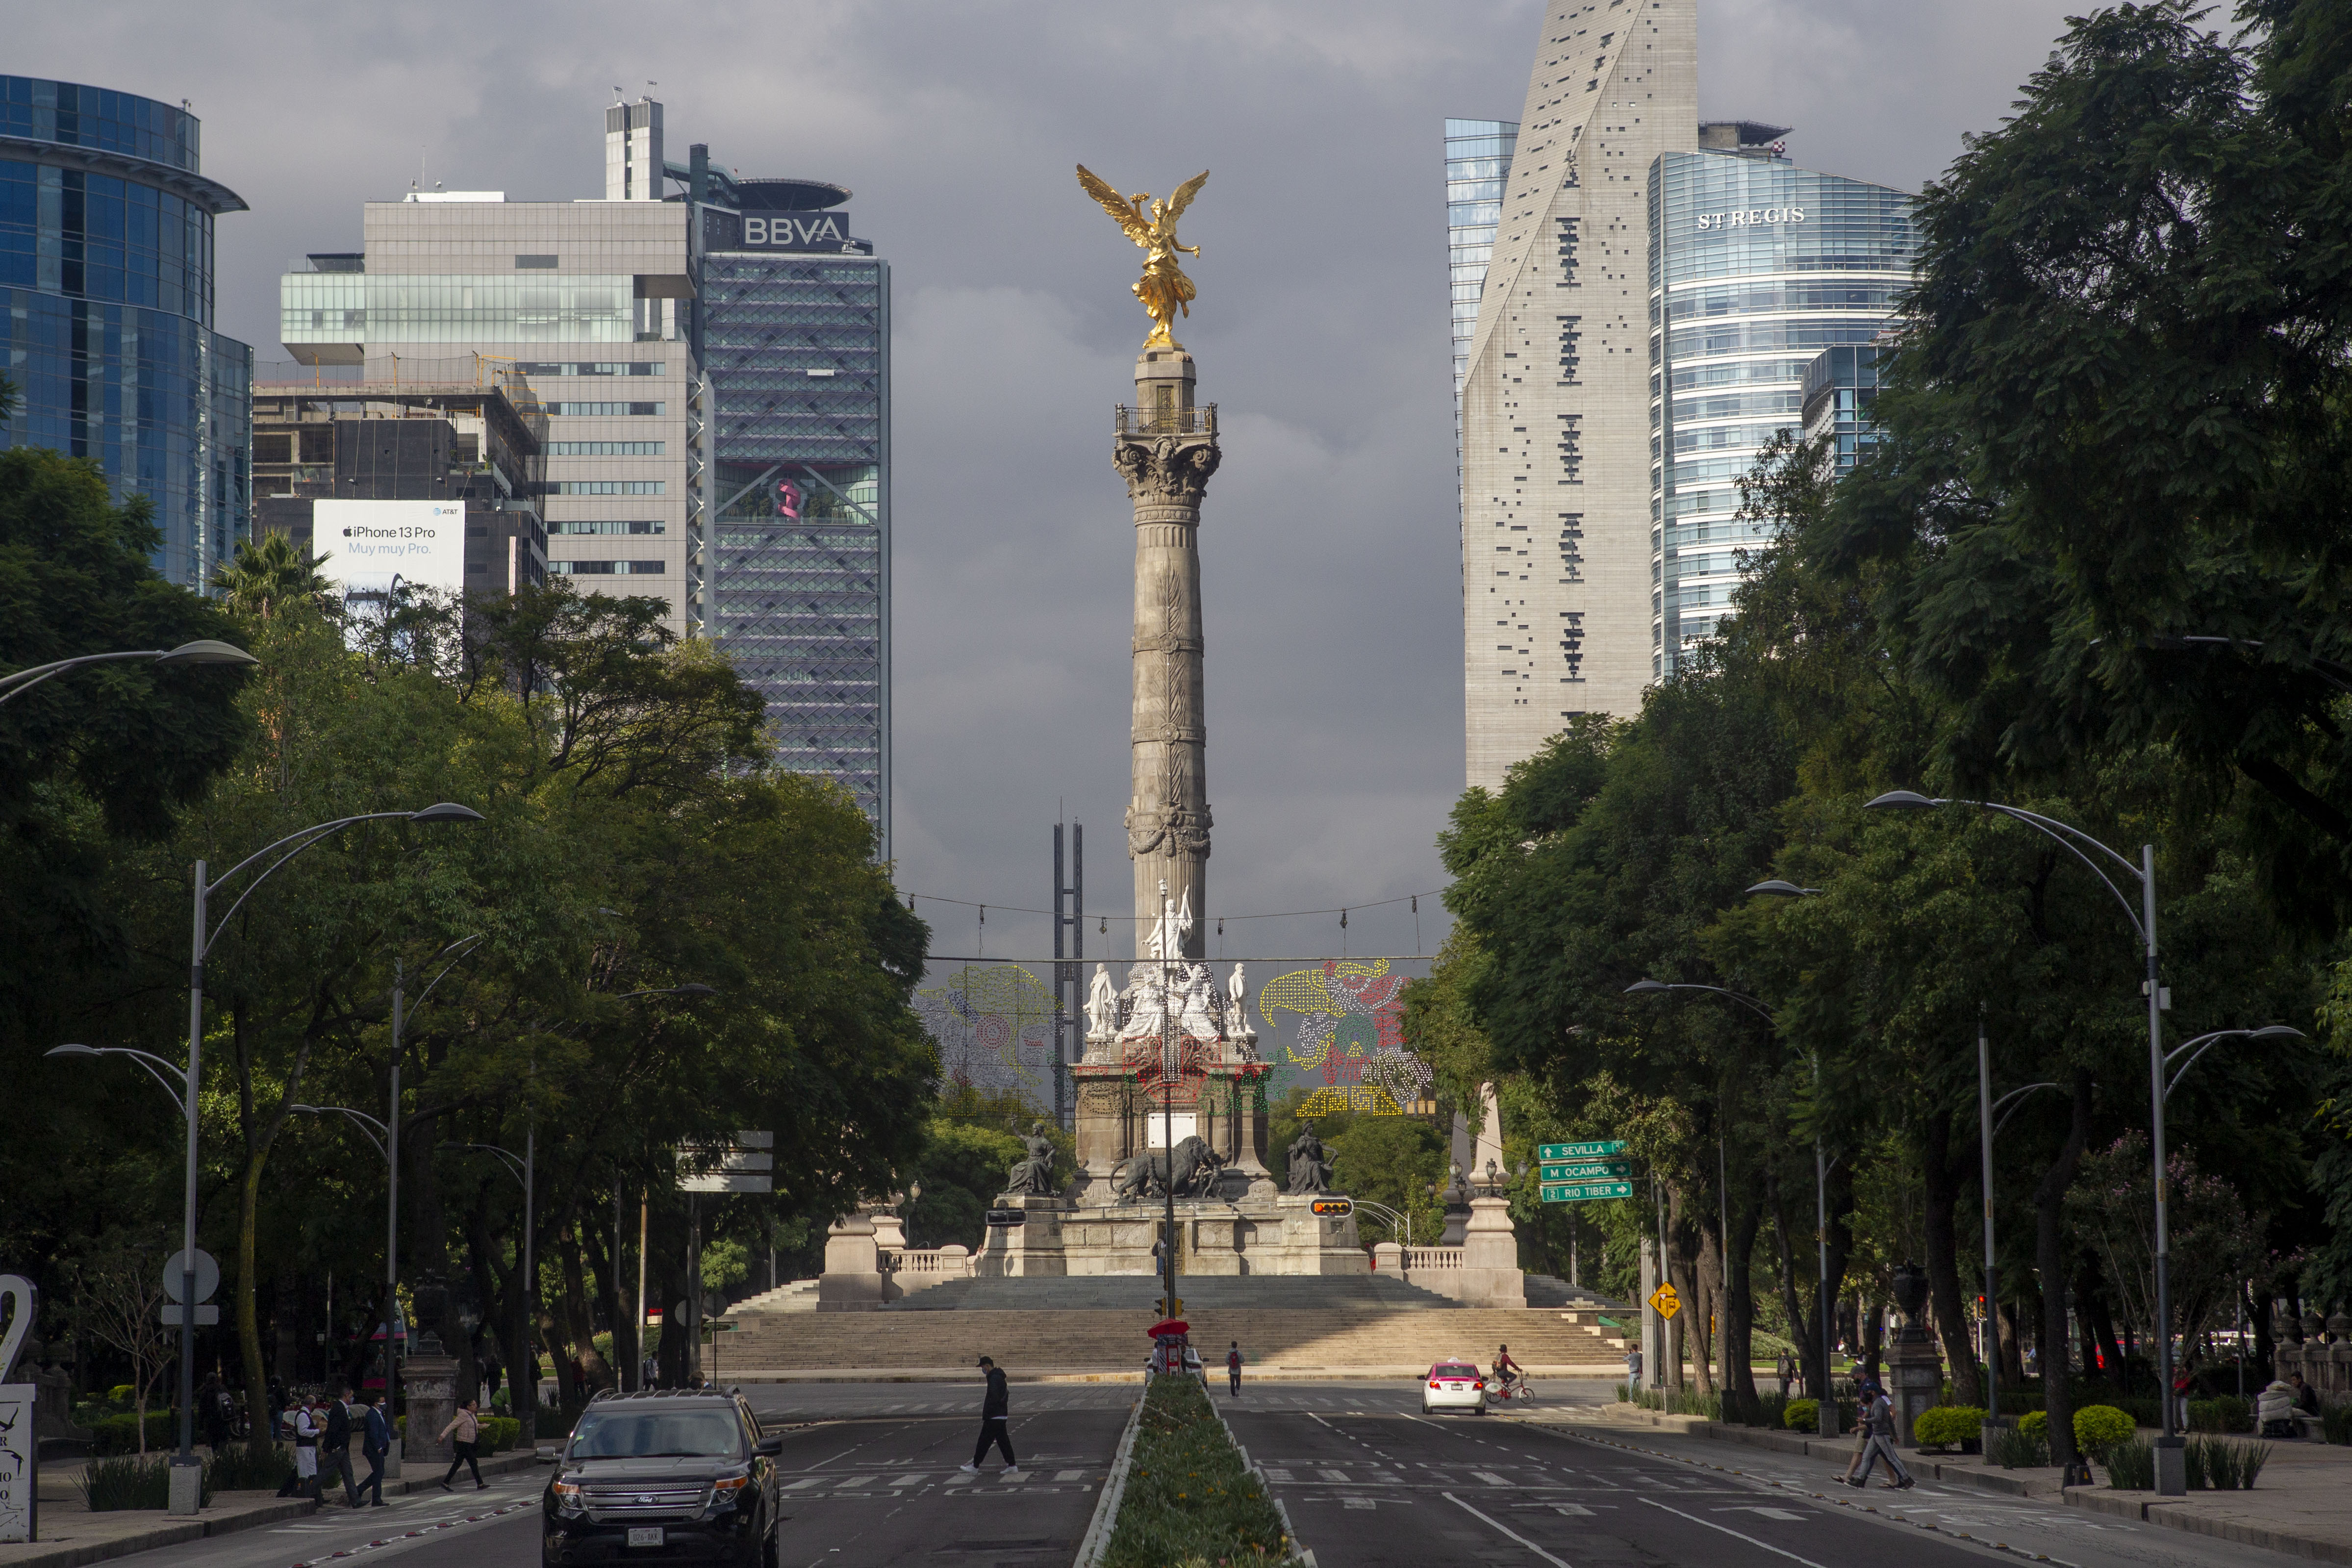 Ciudad de México, octubre 5, 2021.Después de ser cerrado por dos años, el Ángel de la Independencia reabrió el paso al público, donde turistas y capitalinos se detuvieron para realizar fotografías.Foto: Karina Hernández / Infobae 